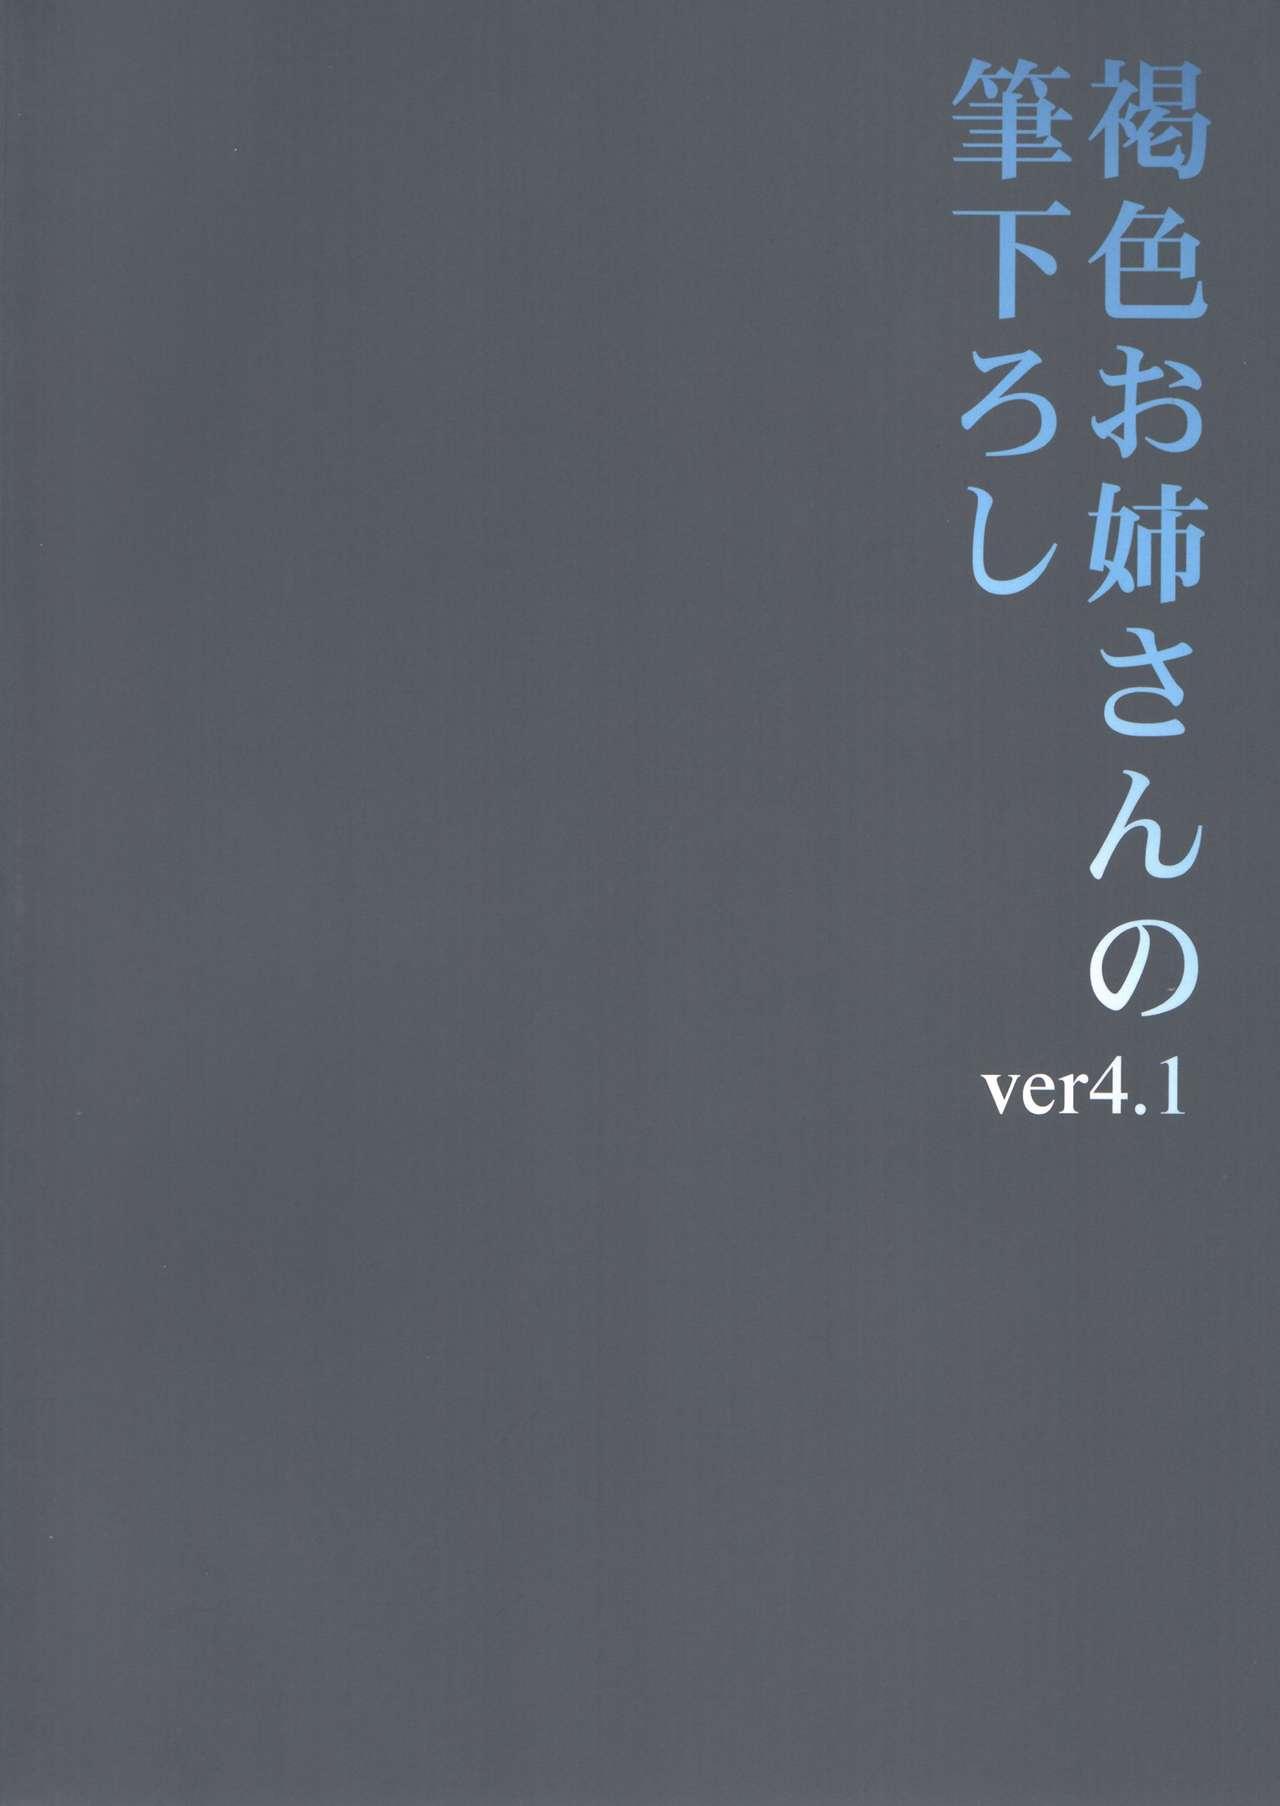 Kasshoku Oneesan no Fudeoroshi Ver.4.1 1